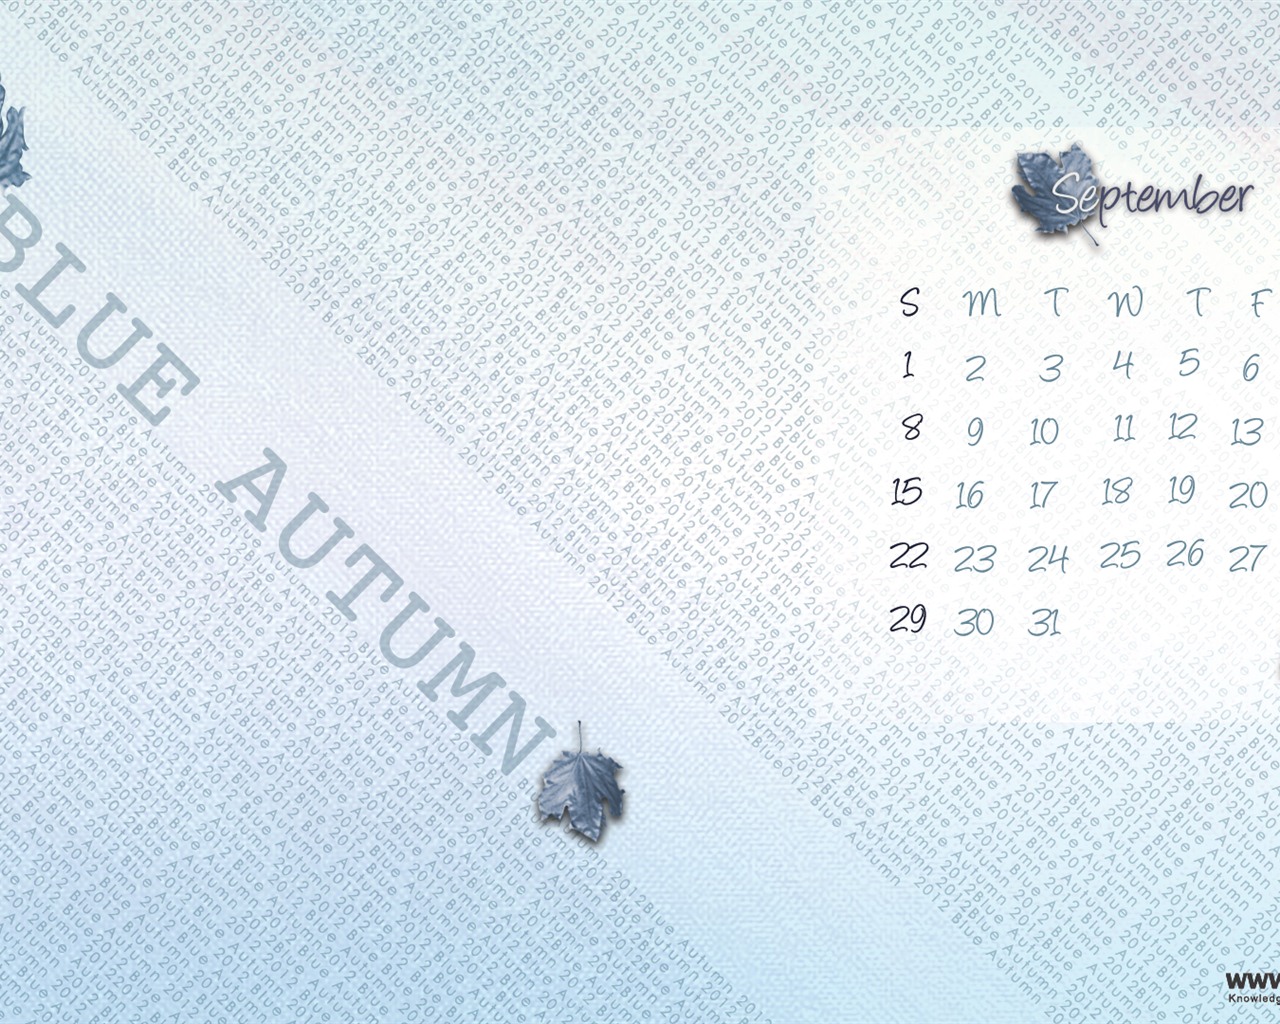 September 2012 Calendar wallpaper (1) #12 - 1280x1024